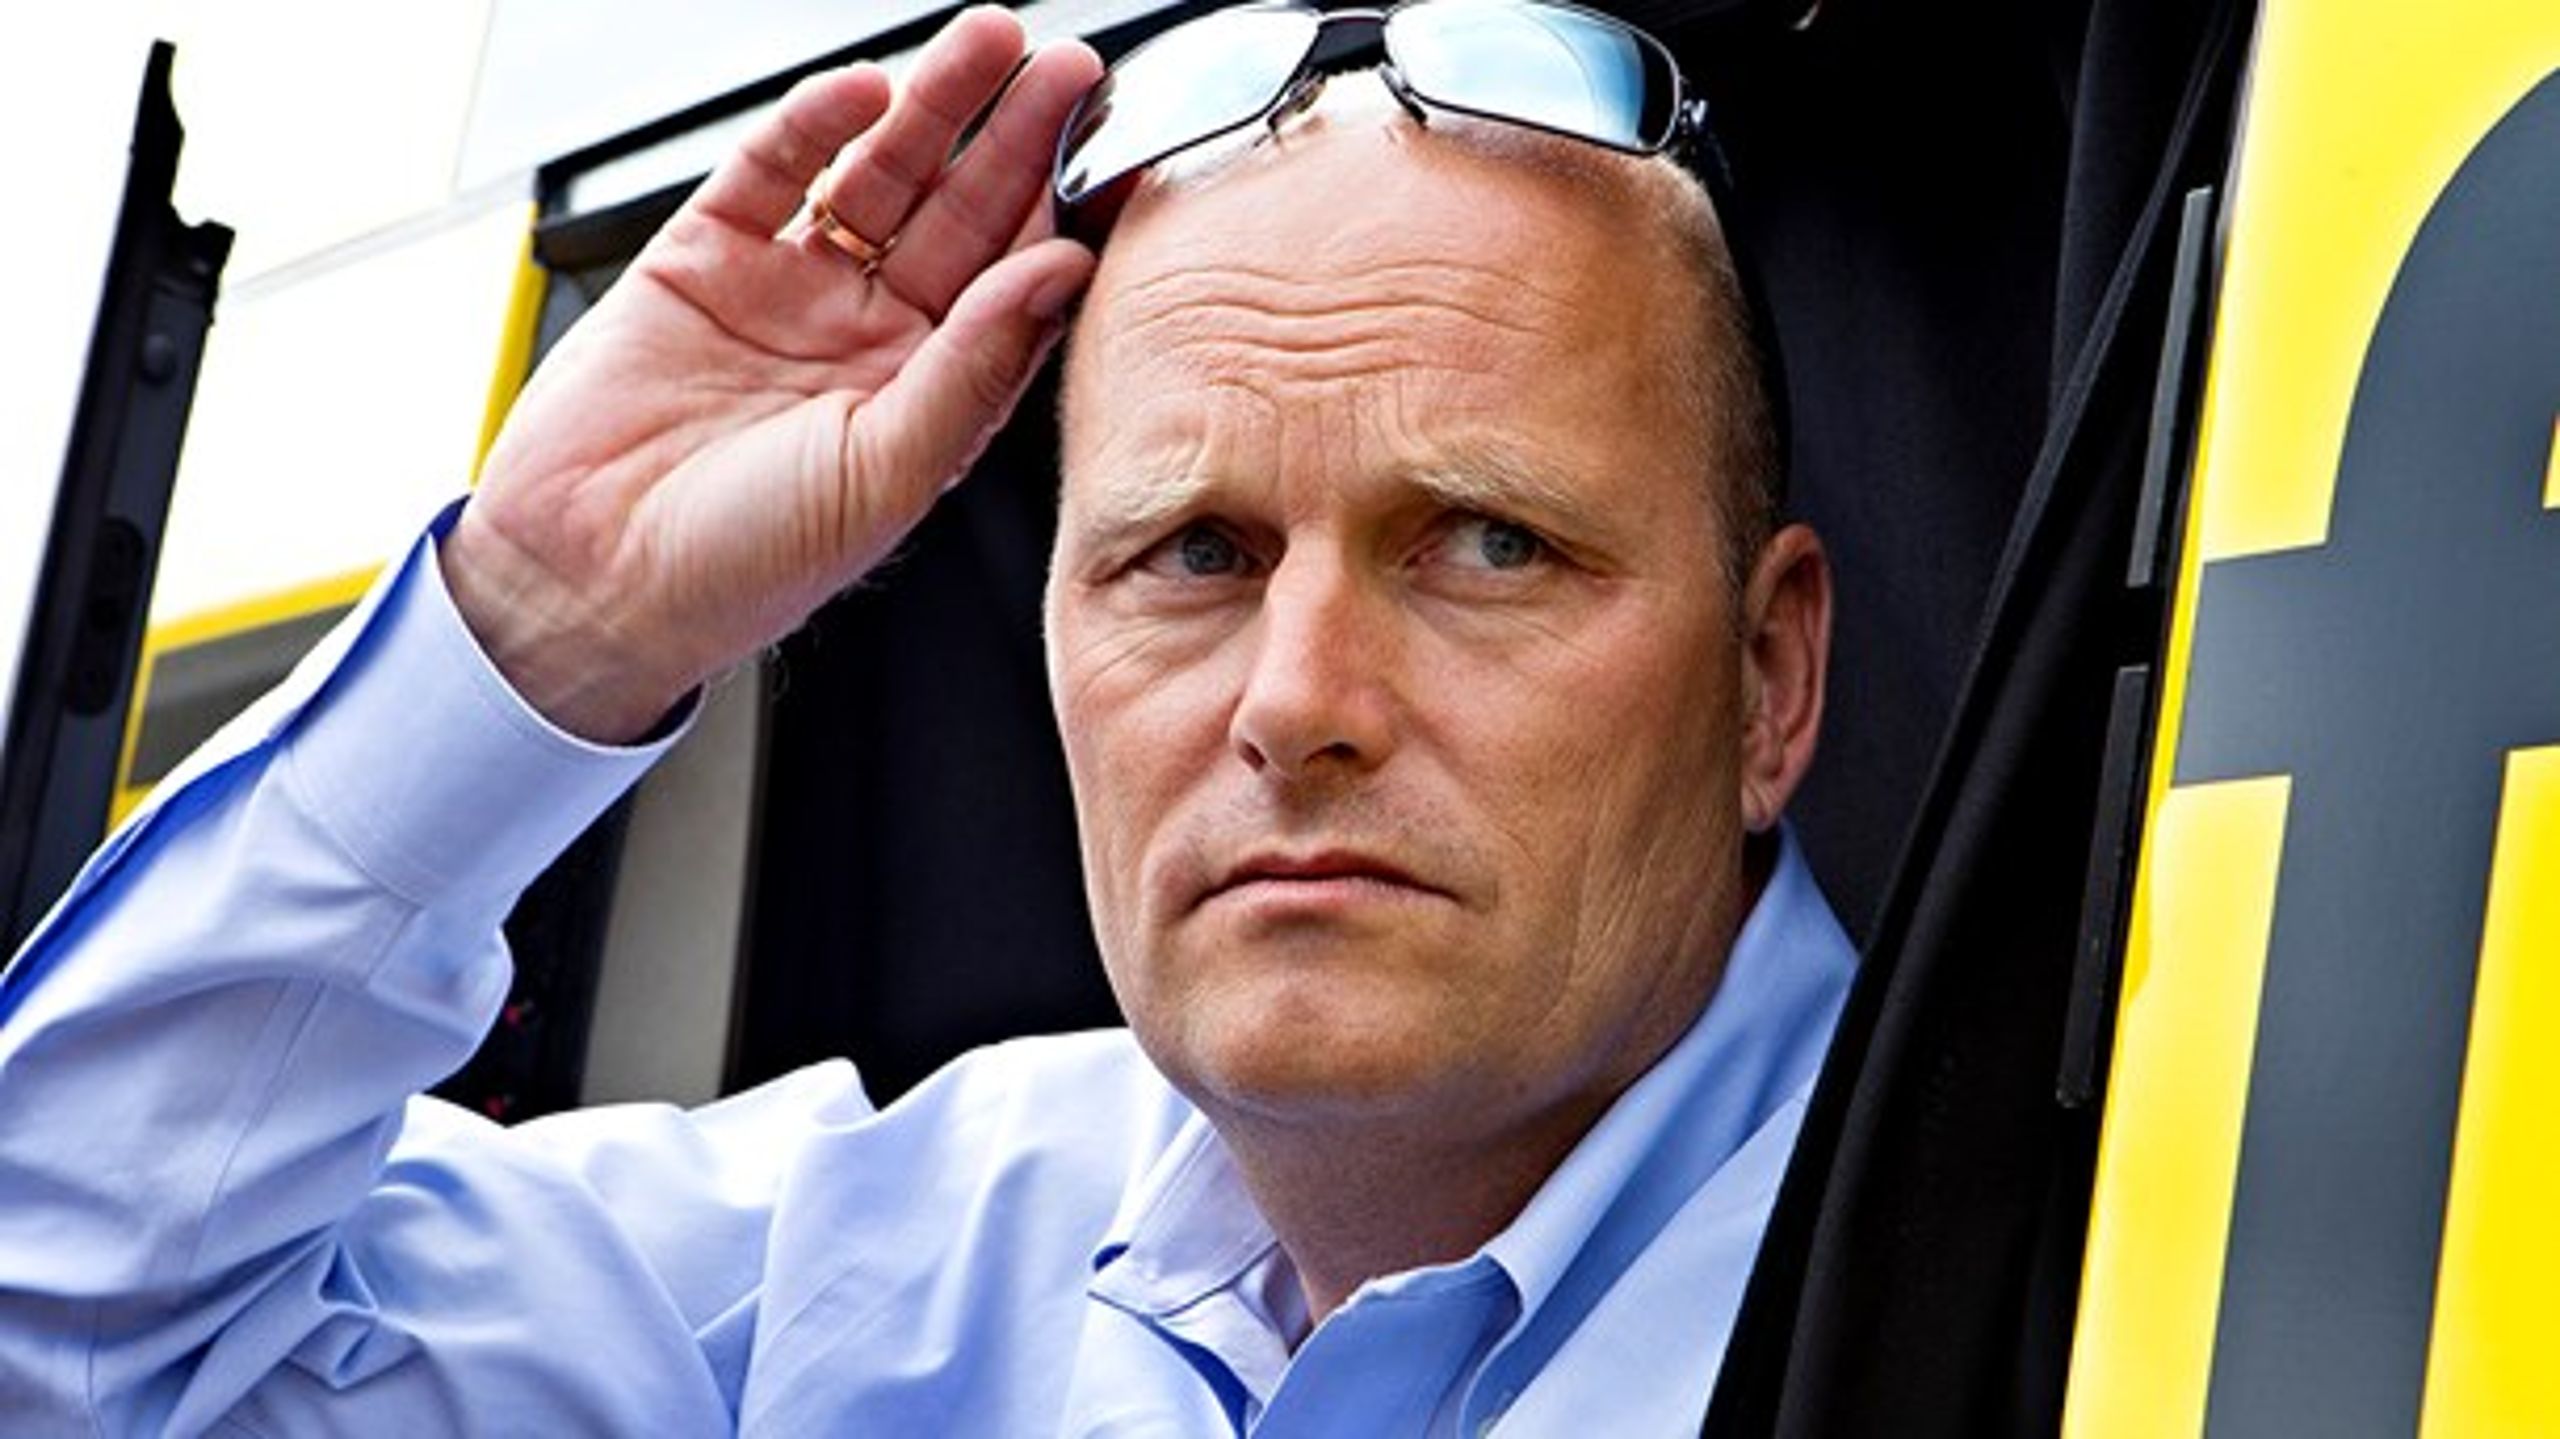 Bjarne Riis misbruges i falsk nyhed om investeringer. Nu overvejer han at anmelde fupnummeret til politiet.